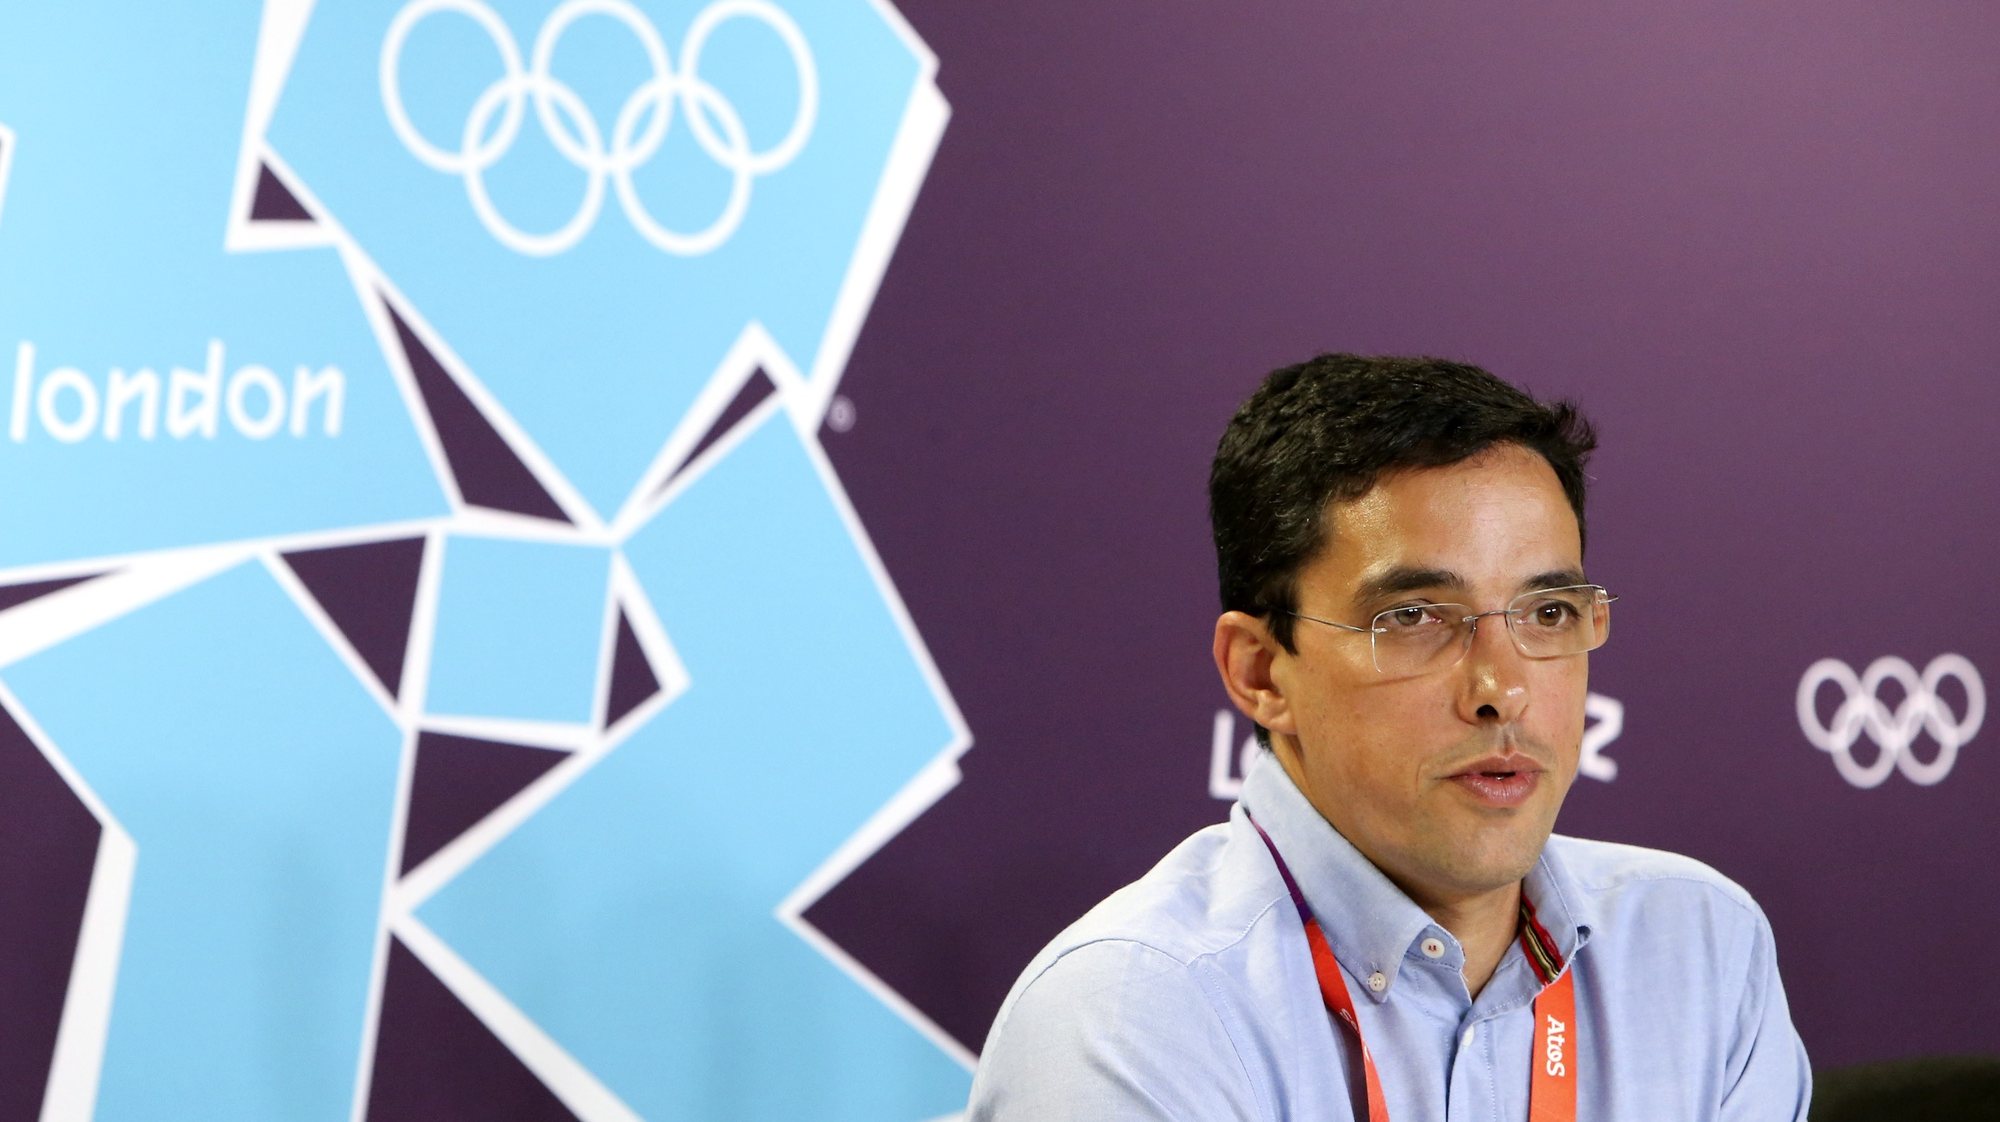 O Chefe de Missão da equipa portuguesa presente nos Jogos Olímpicos, Mário Santos, durante conferência de imprensa no Main Press Center, esta manhã em Londres, 26 de julho de 2012. JOÃO RELVAS/LUSA